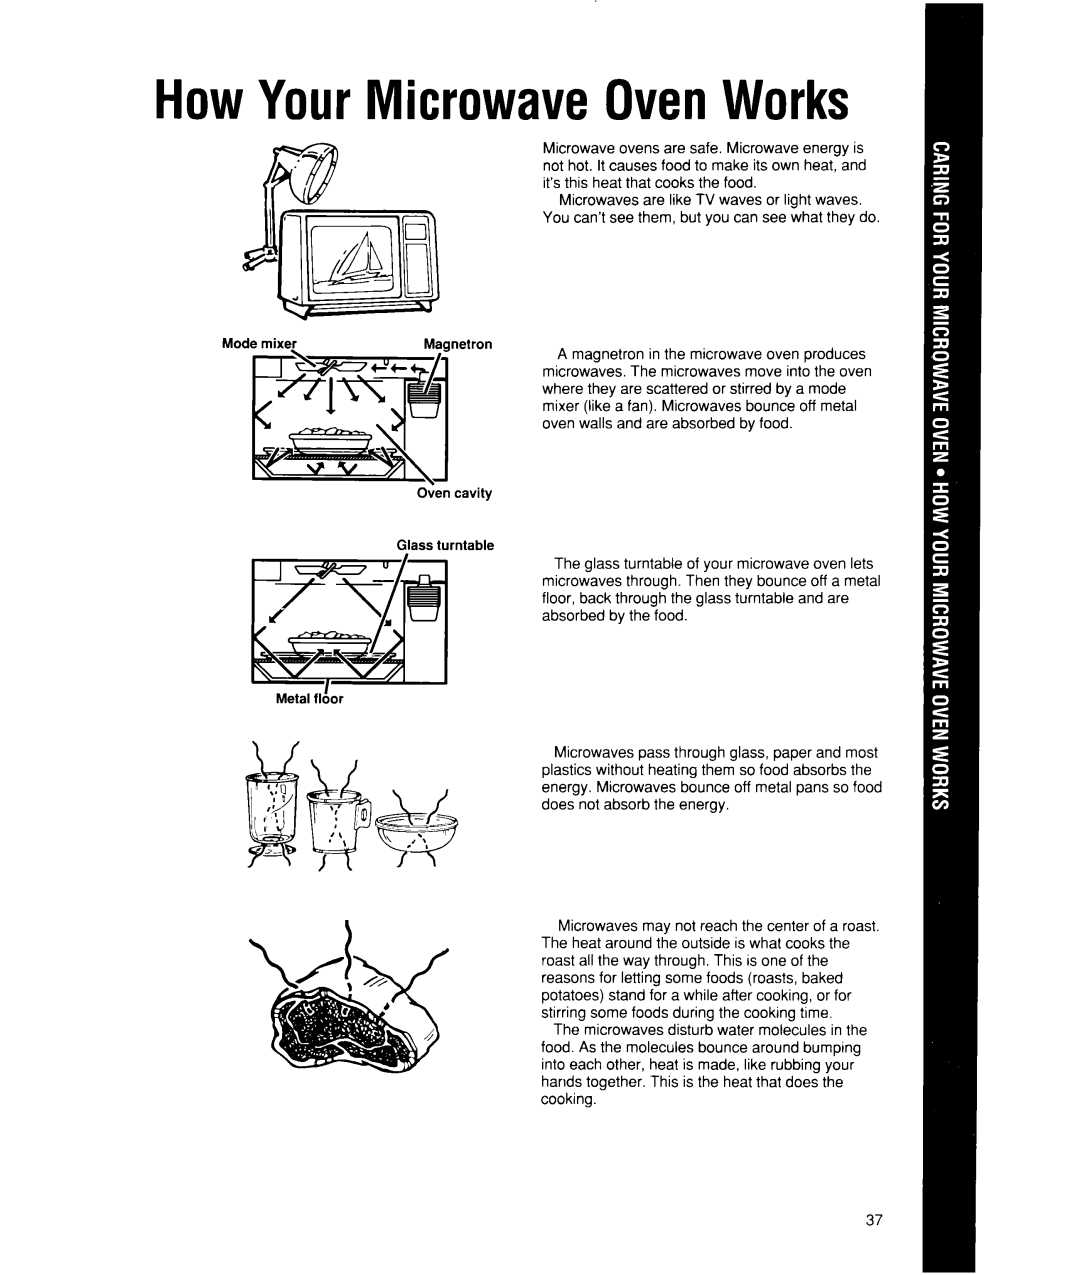 Whirlpool MW7500XW manual HowYourMicrowaveOvenWorks 